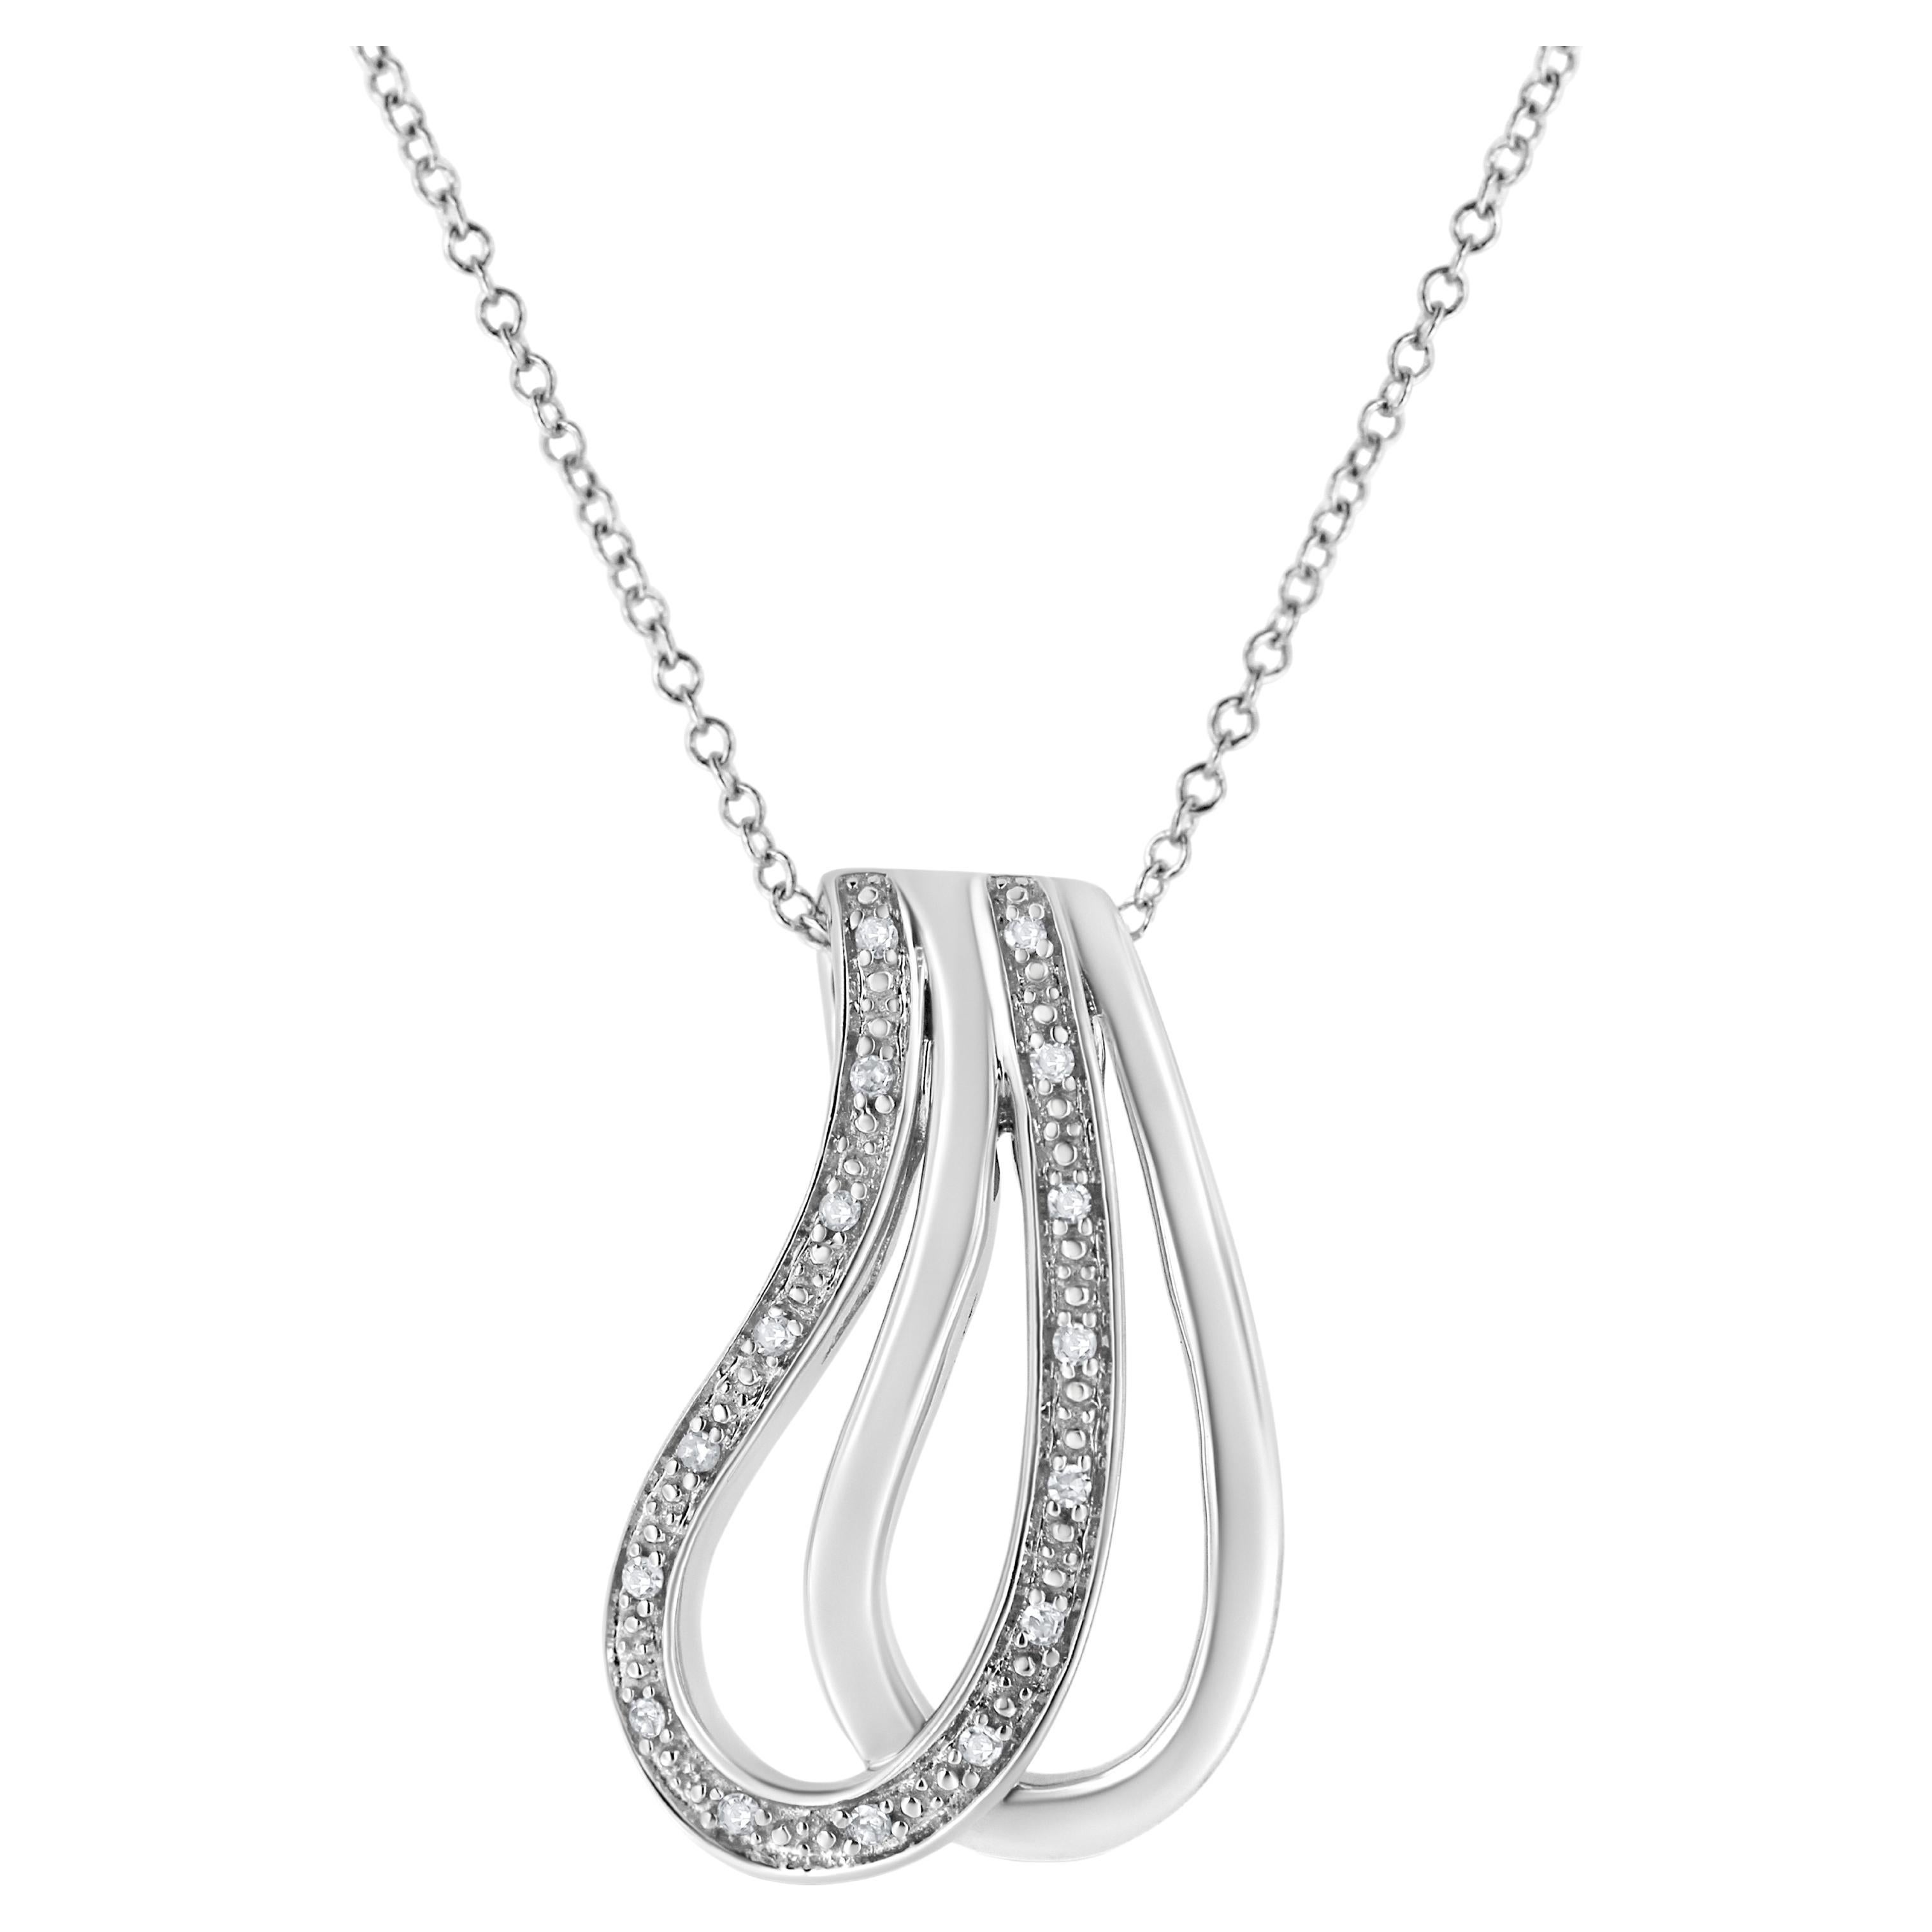 .925 Sterling Silver Pave-Set Diamond Accent Double Curve Pendant Necklace